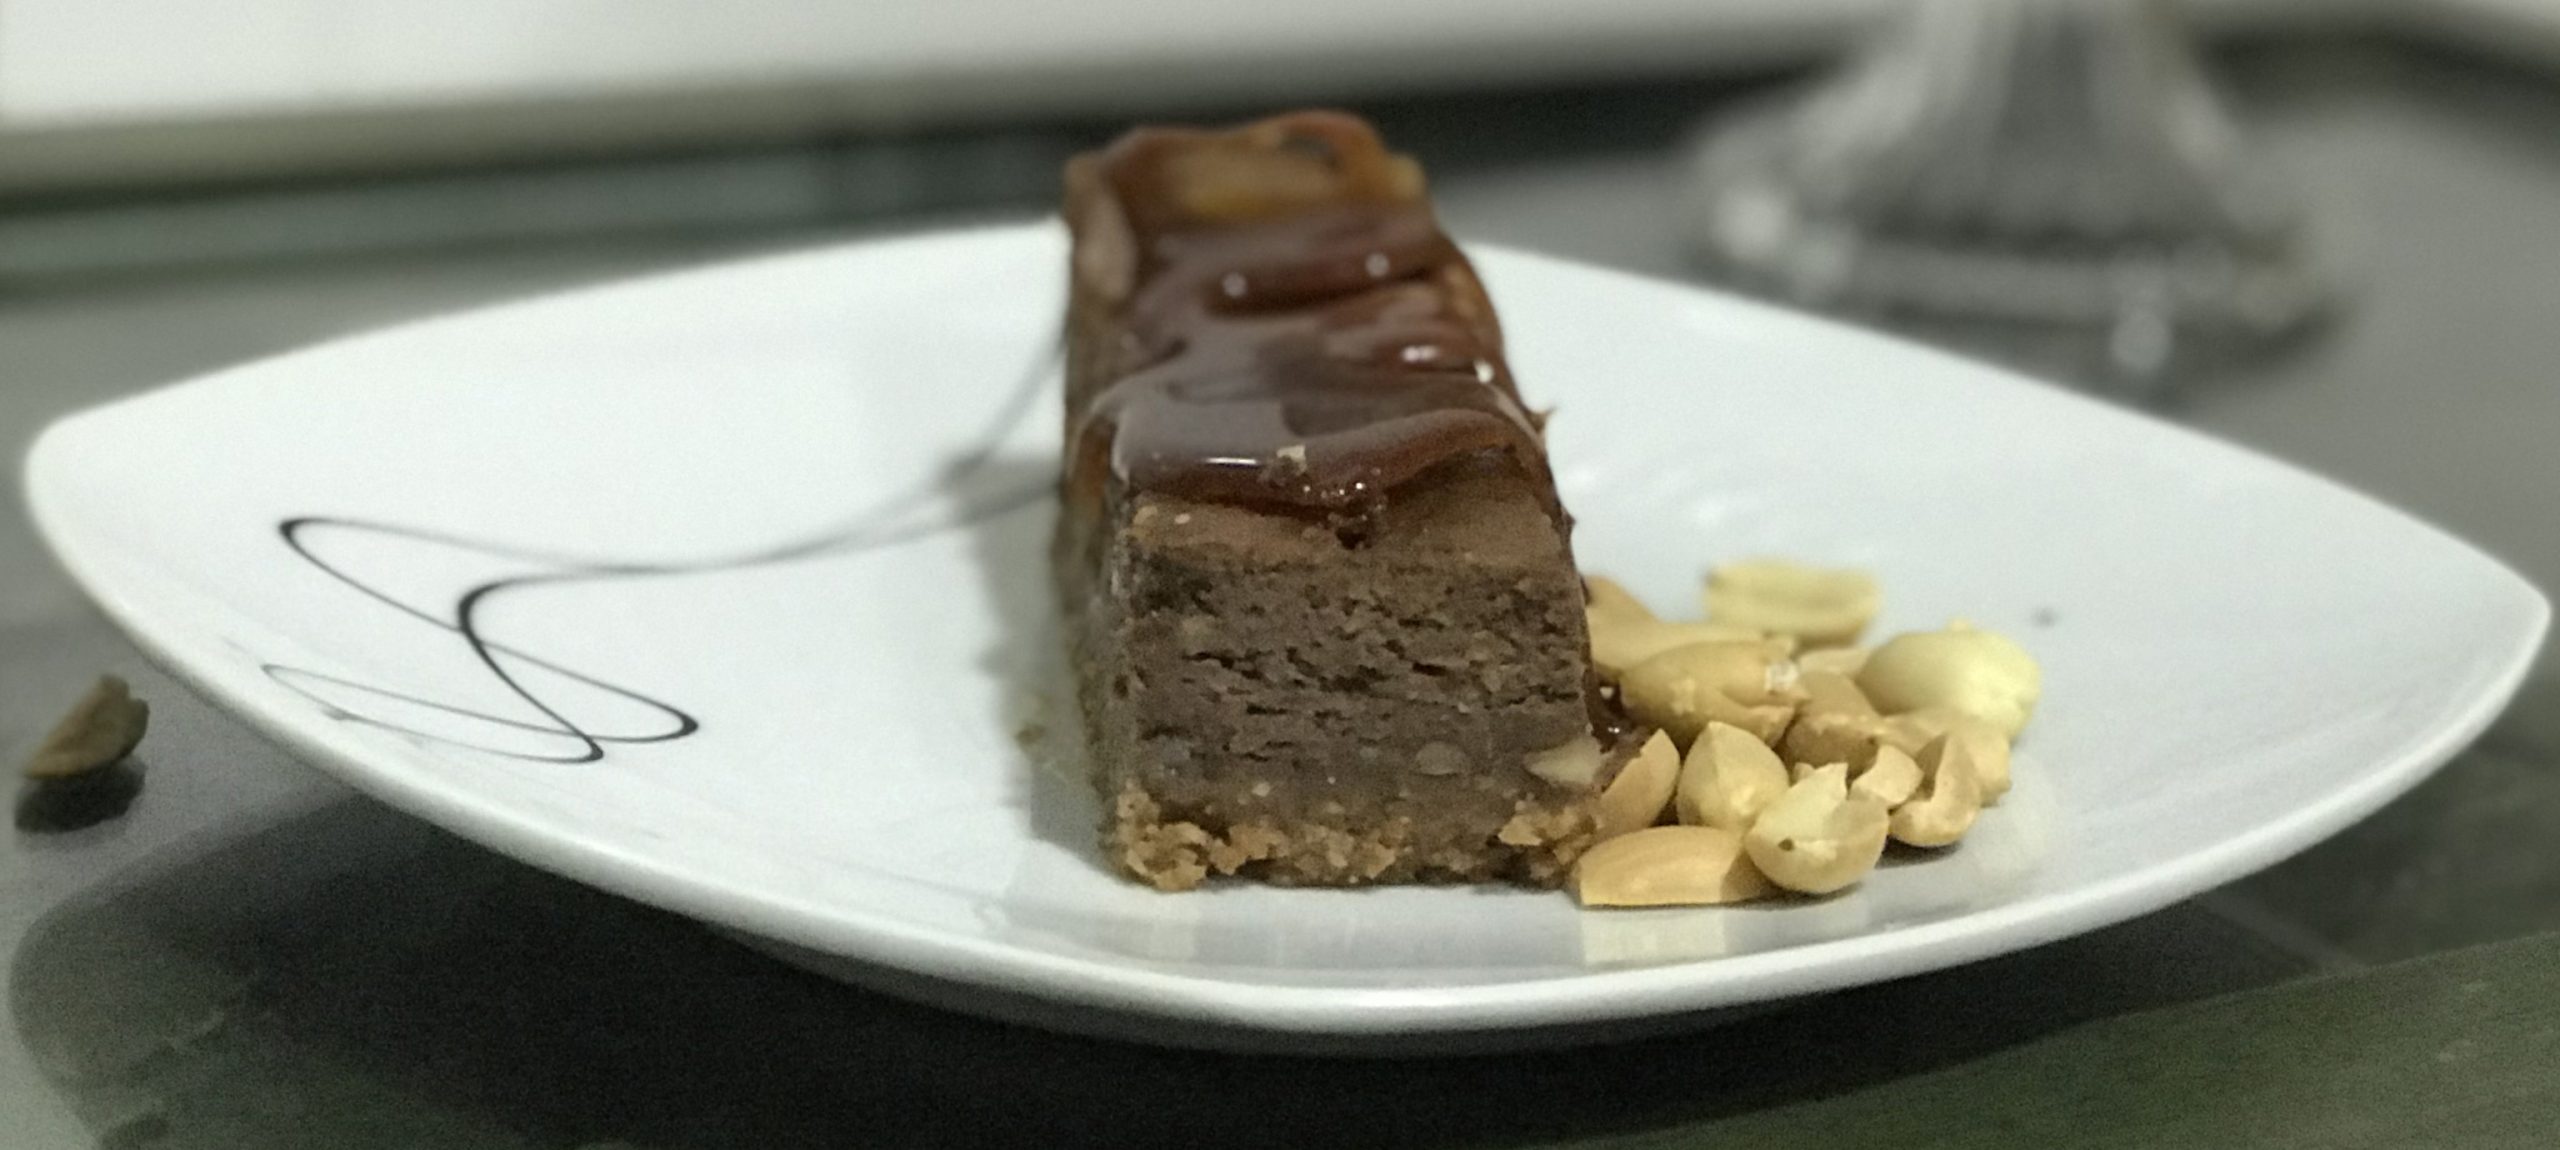 Barritas cheesecake de chocolate con cacahuete y caramelo "Snickers"